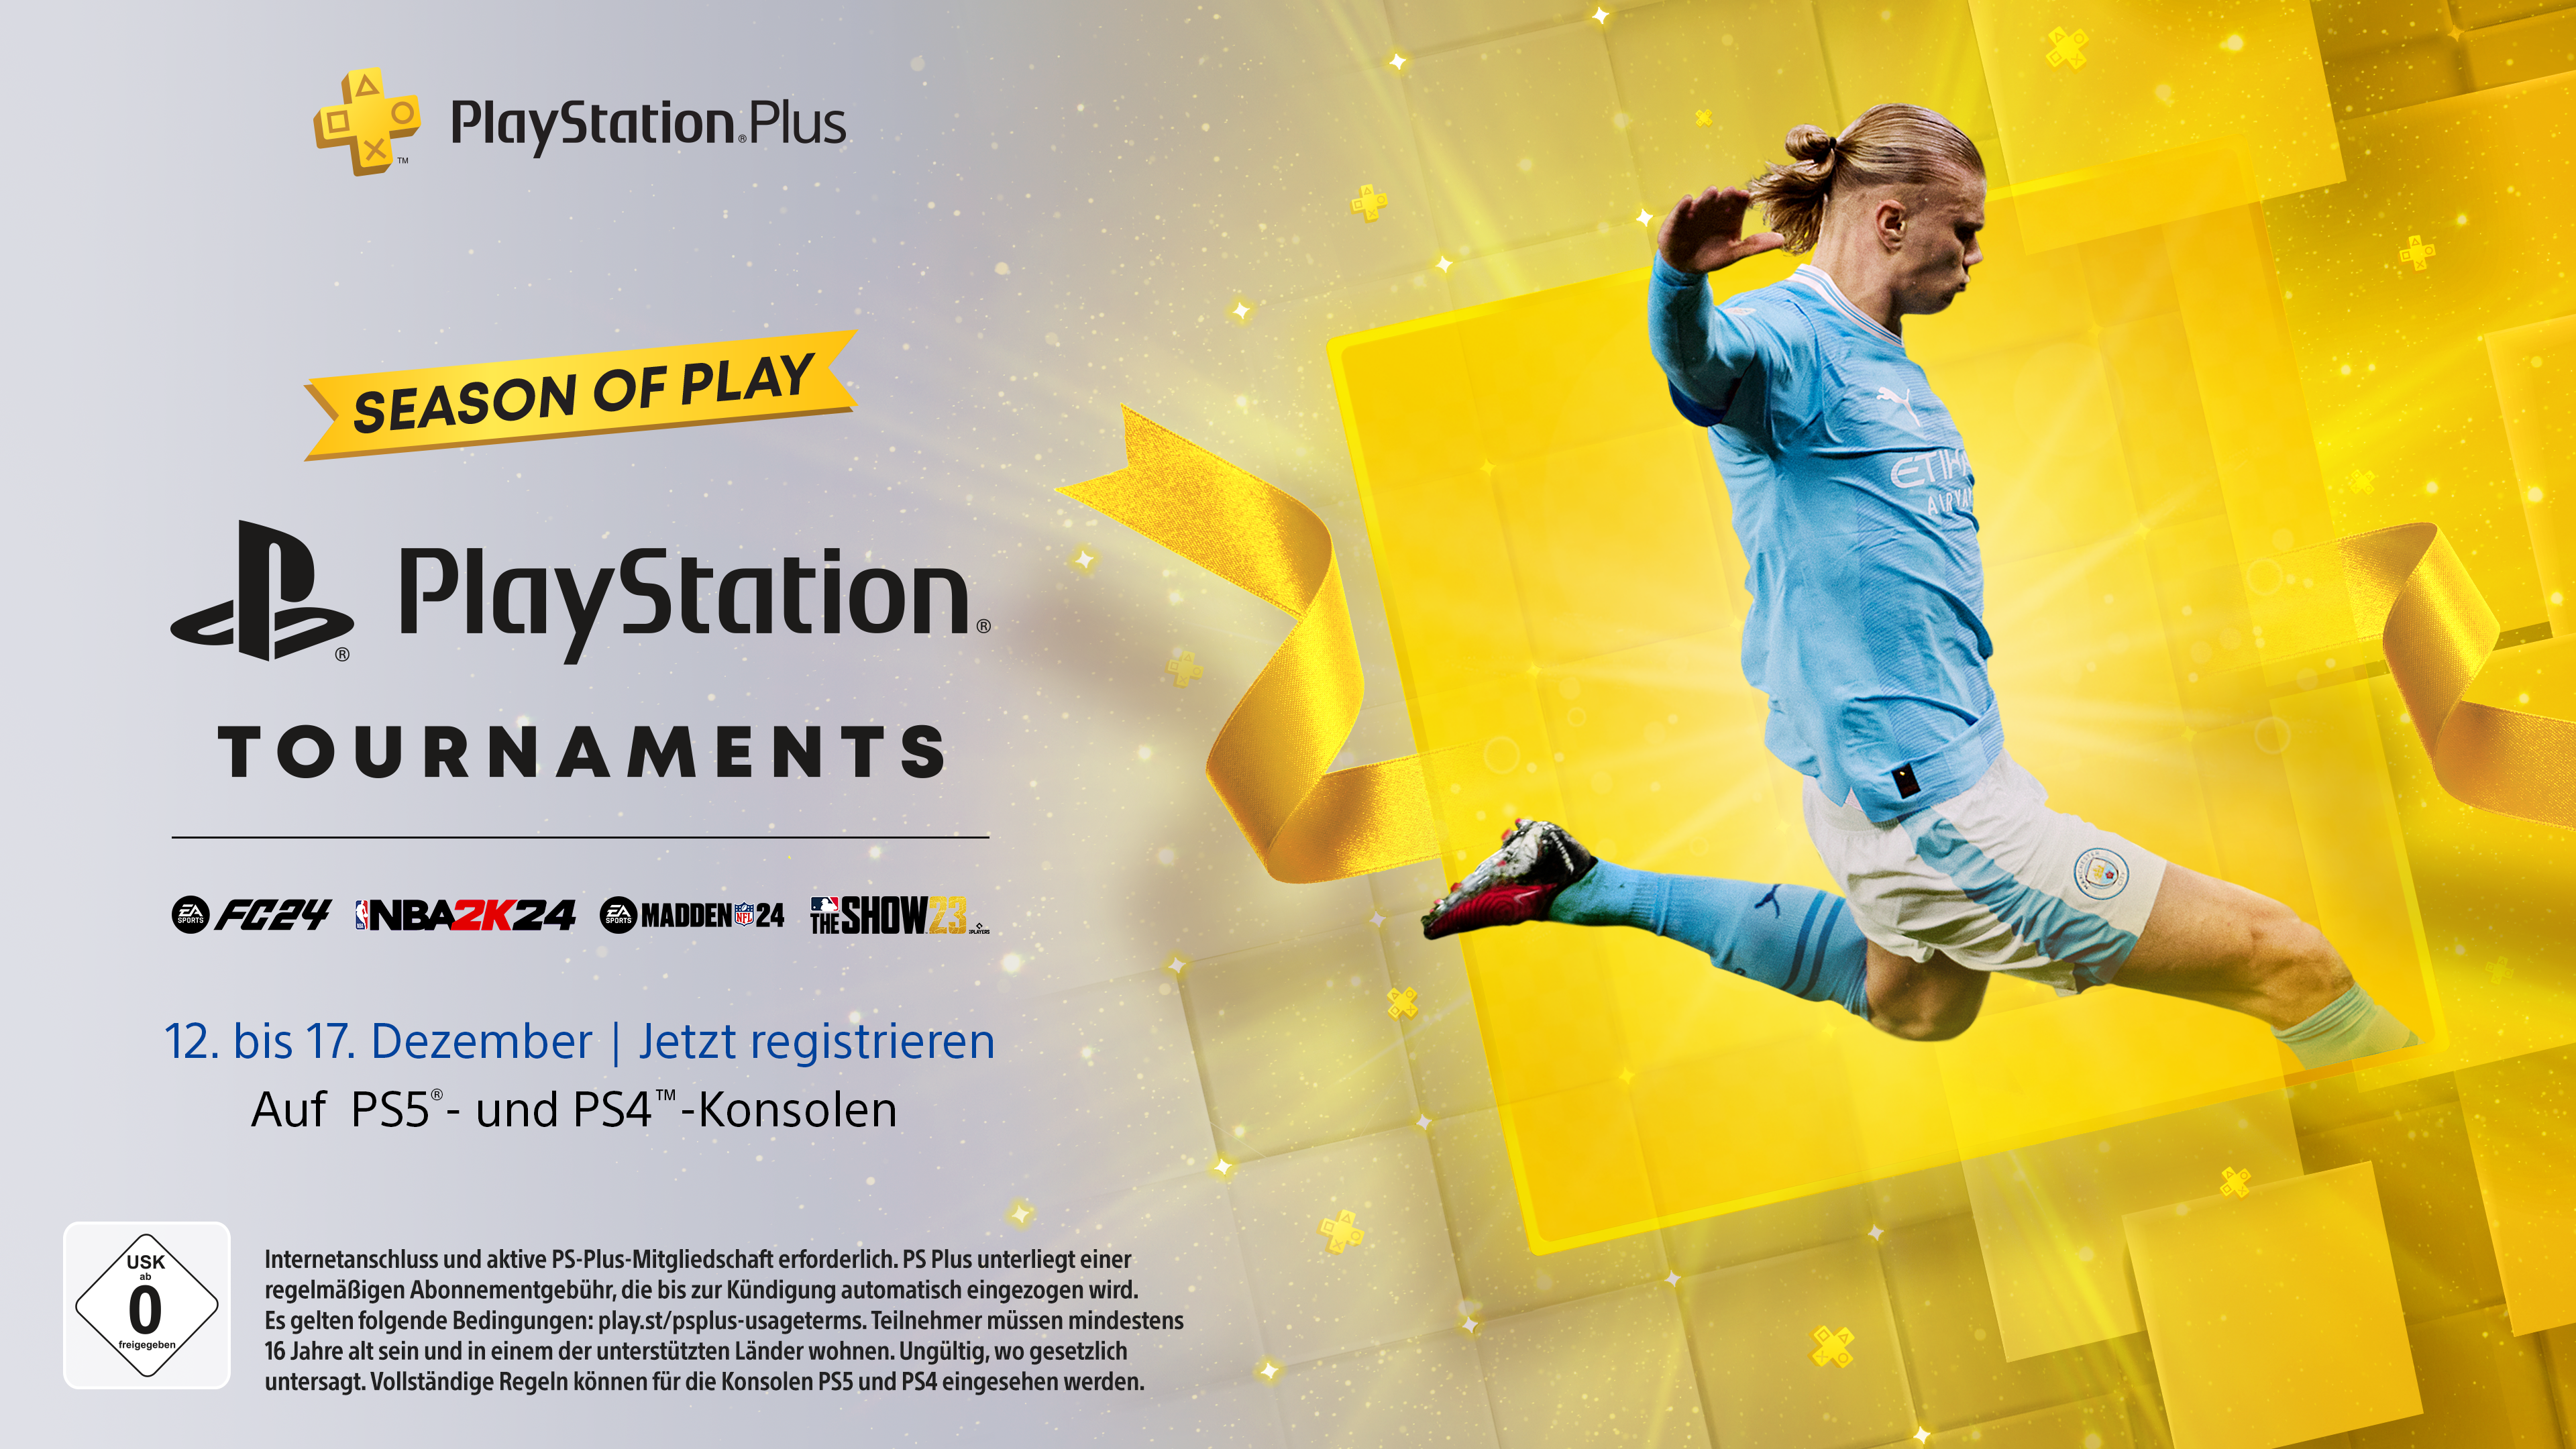 Macht euch bereit – die PlayStation Plus Season of Play beginnt morgen –  Der deutschsprachige PlayStation Blog